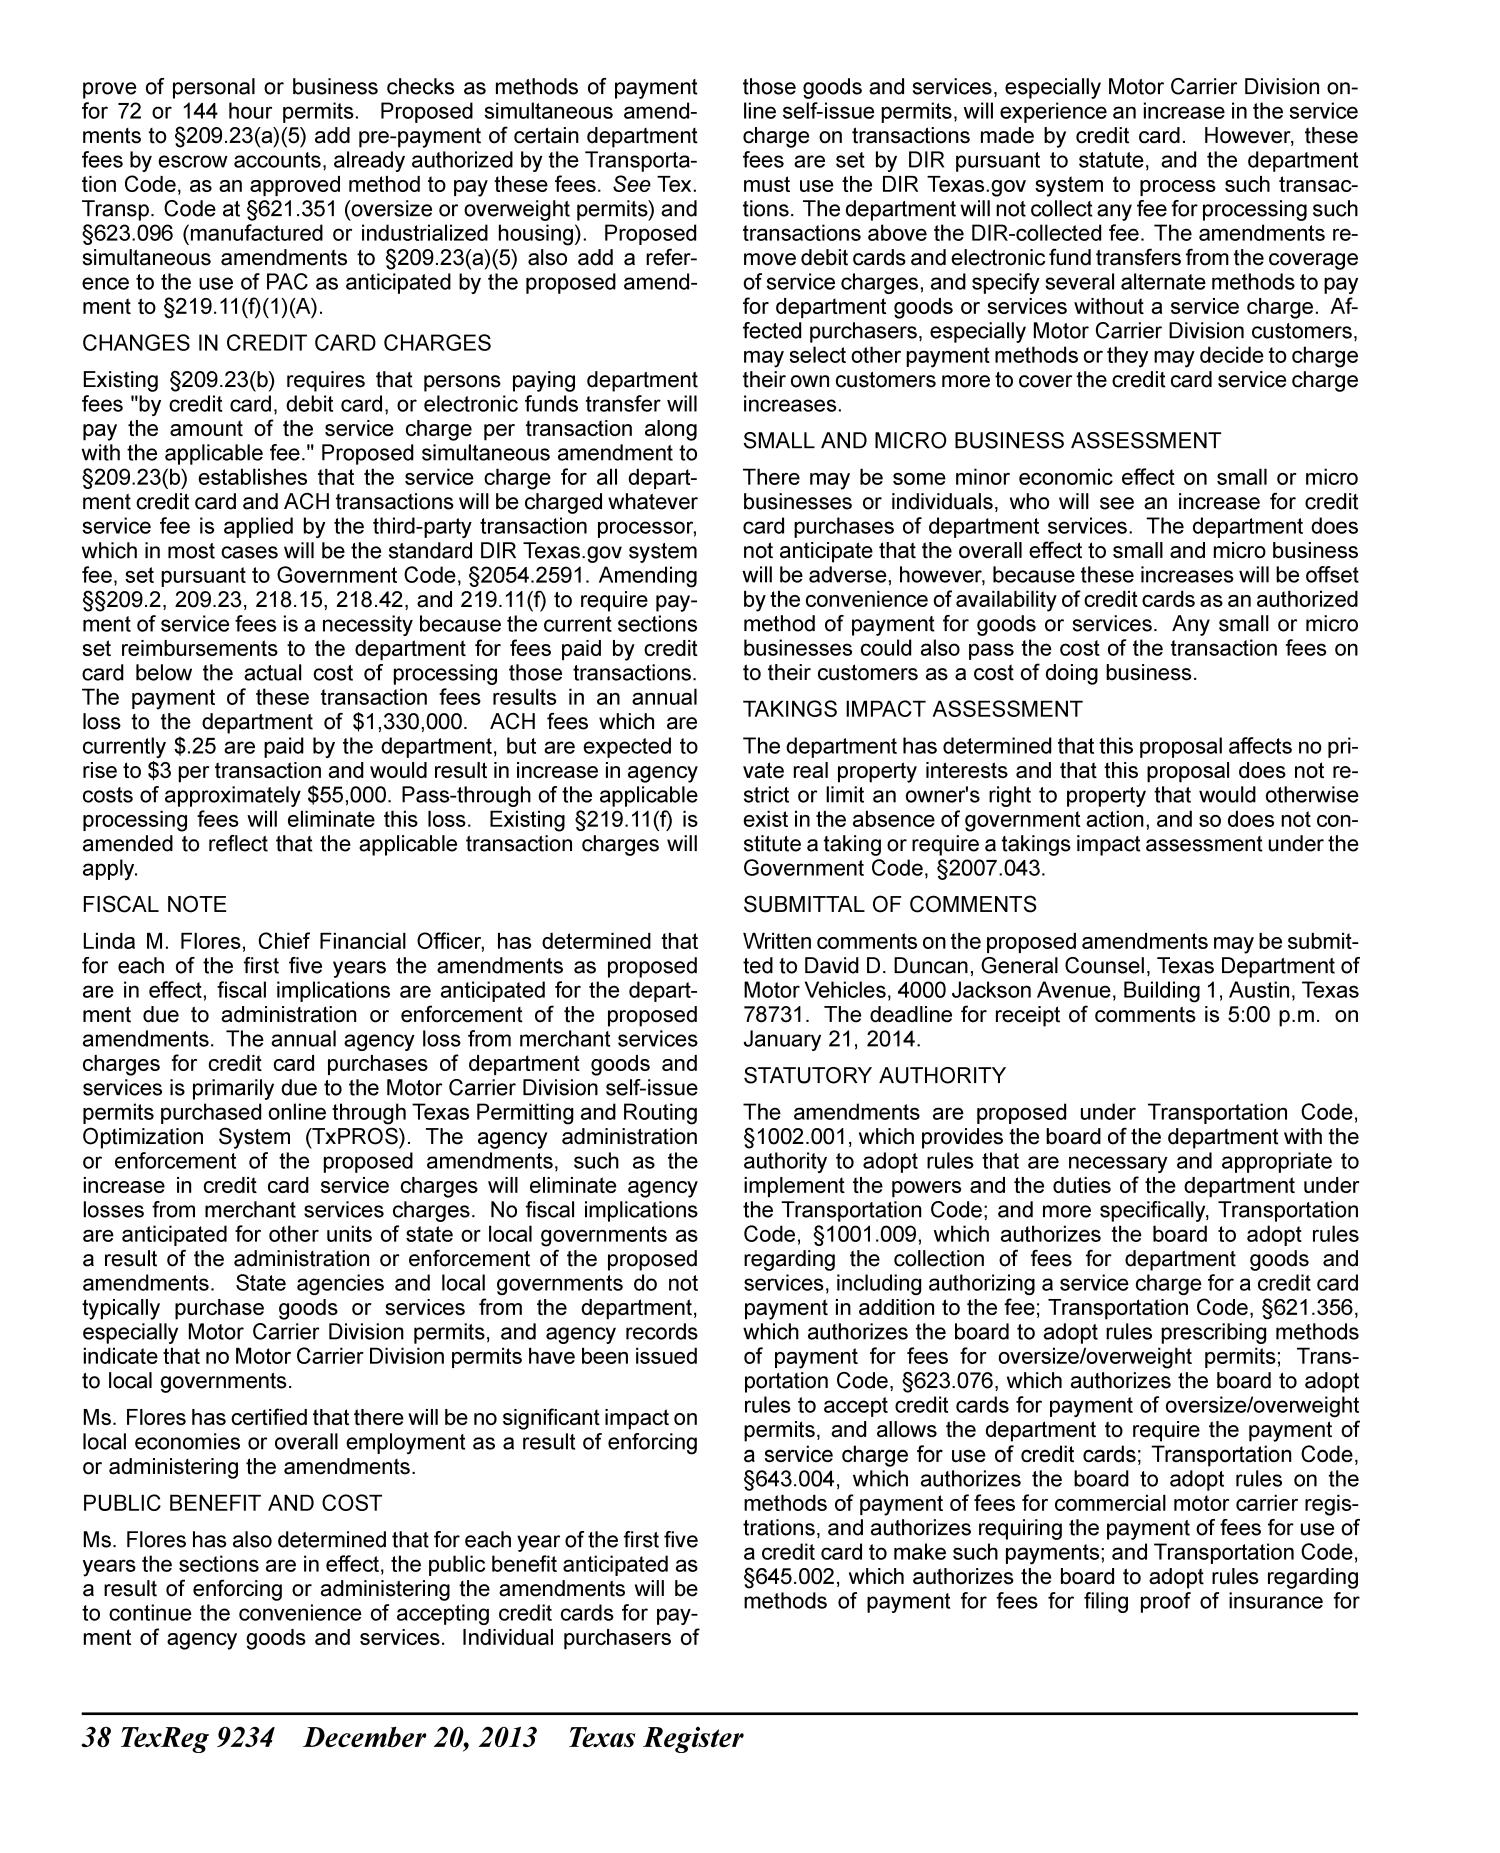 Texas Register, Volume 38, Number 51, Pages 9155-9408, December 20, 2013
                                                
                                                    9234
                                                